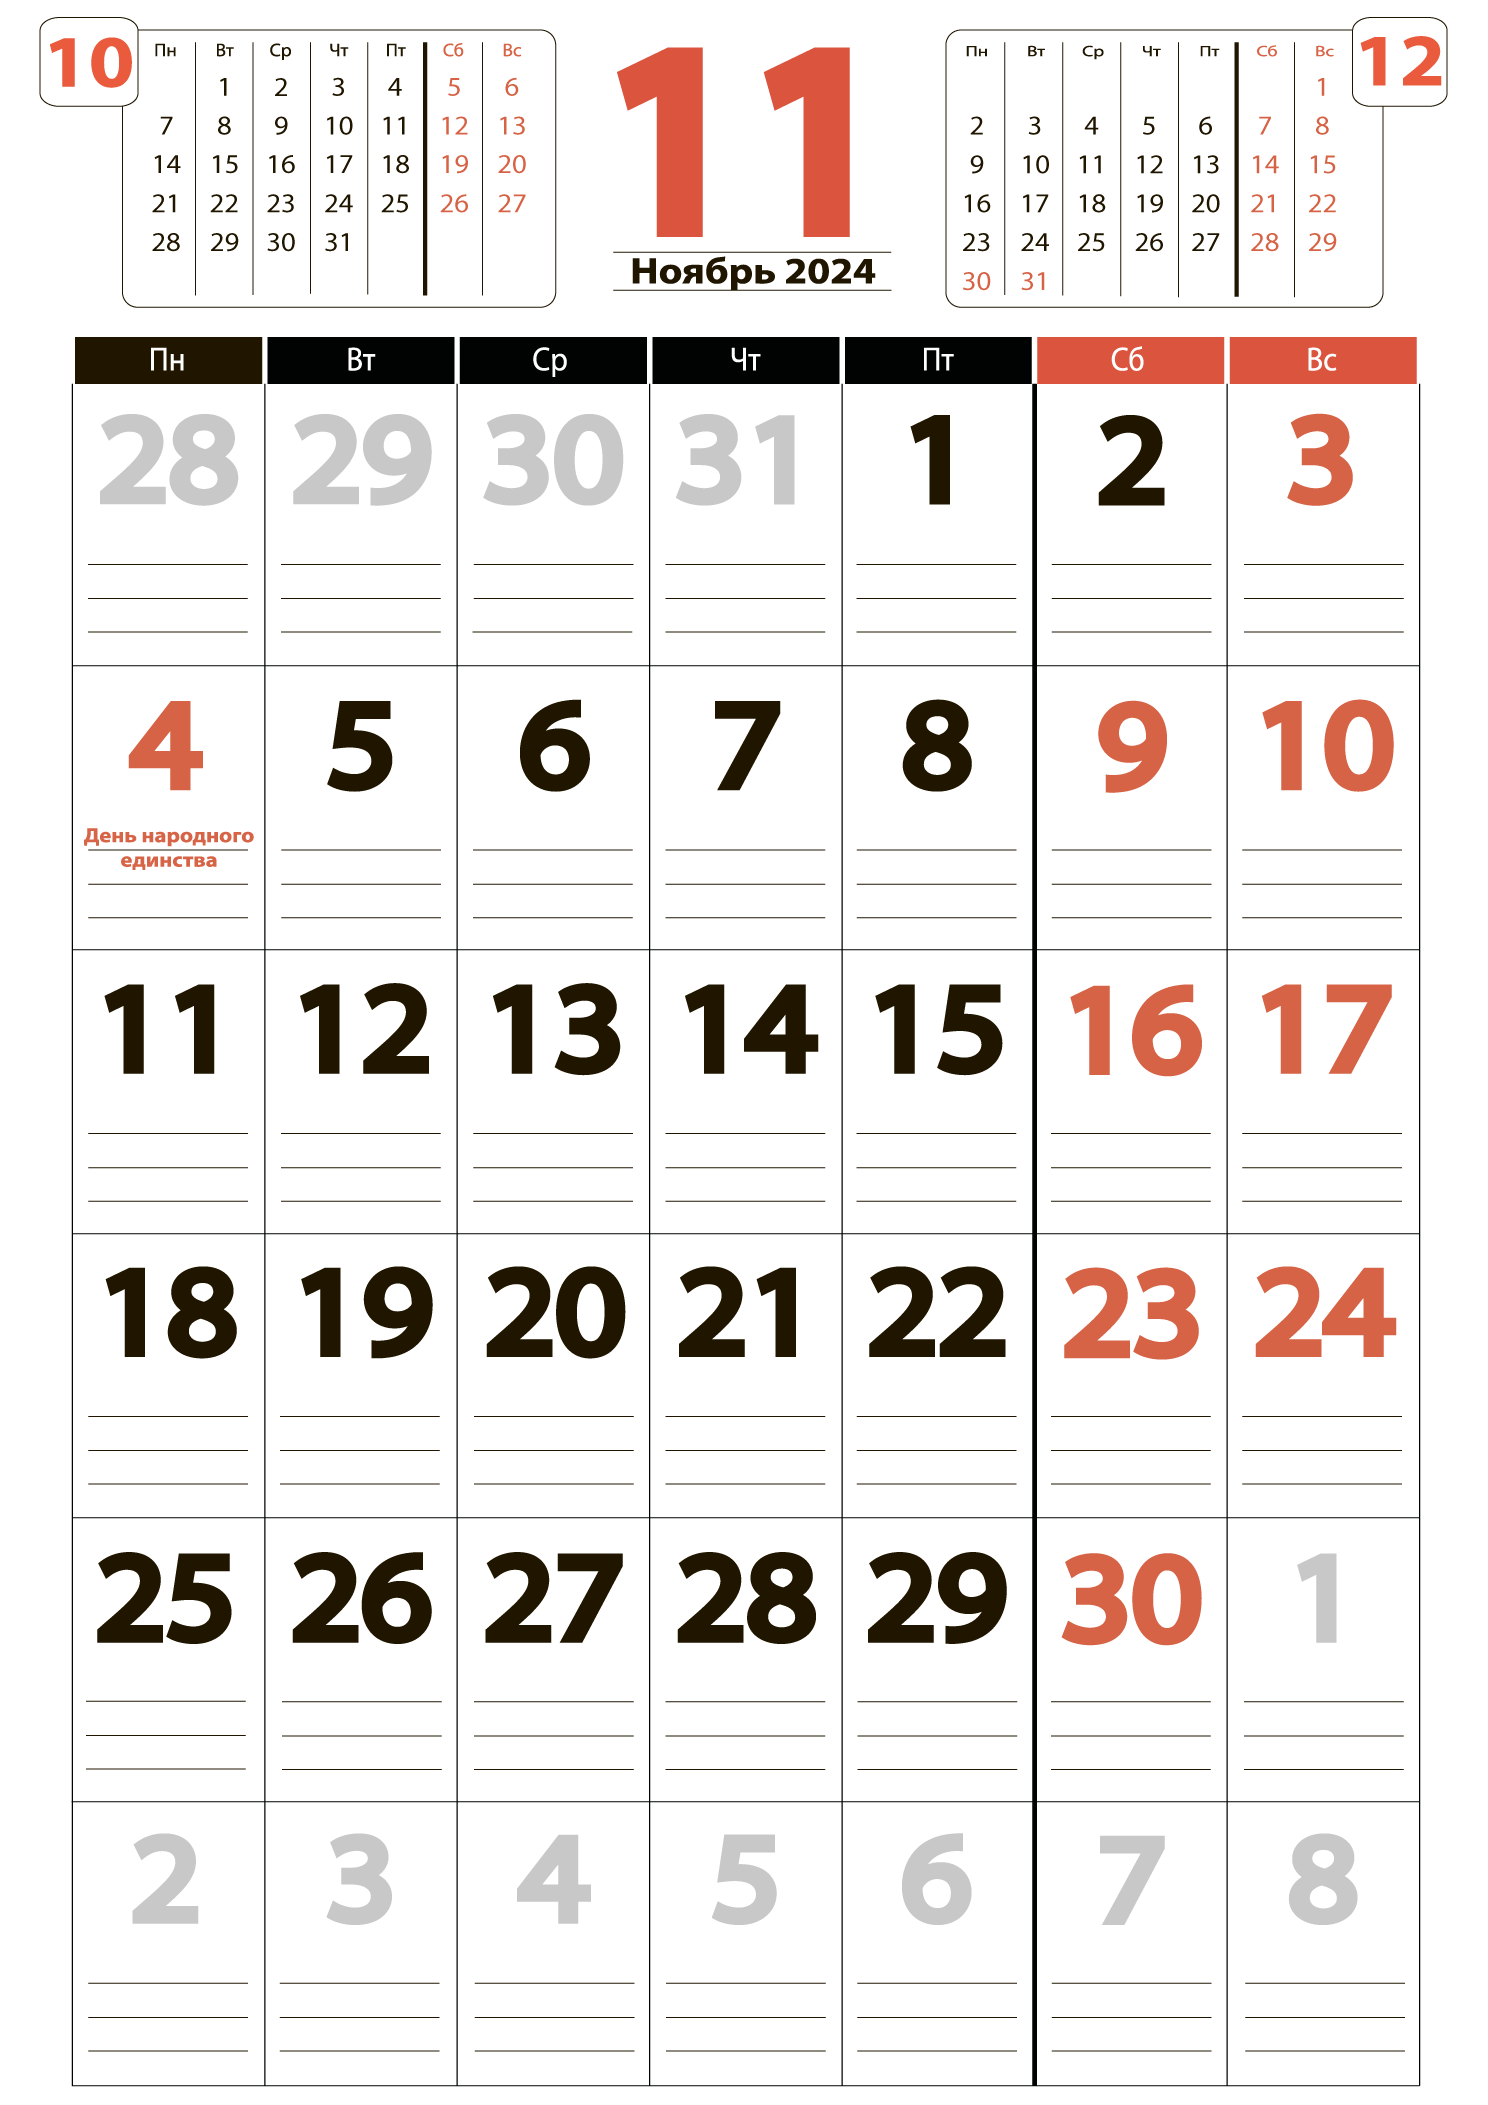 Печать крупного календаря на ноябрь 2024